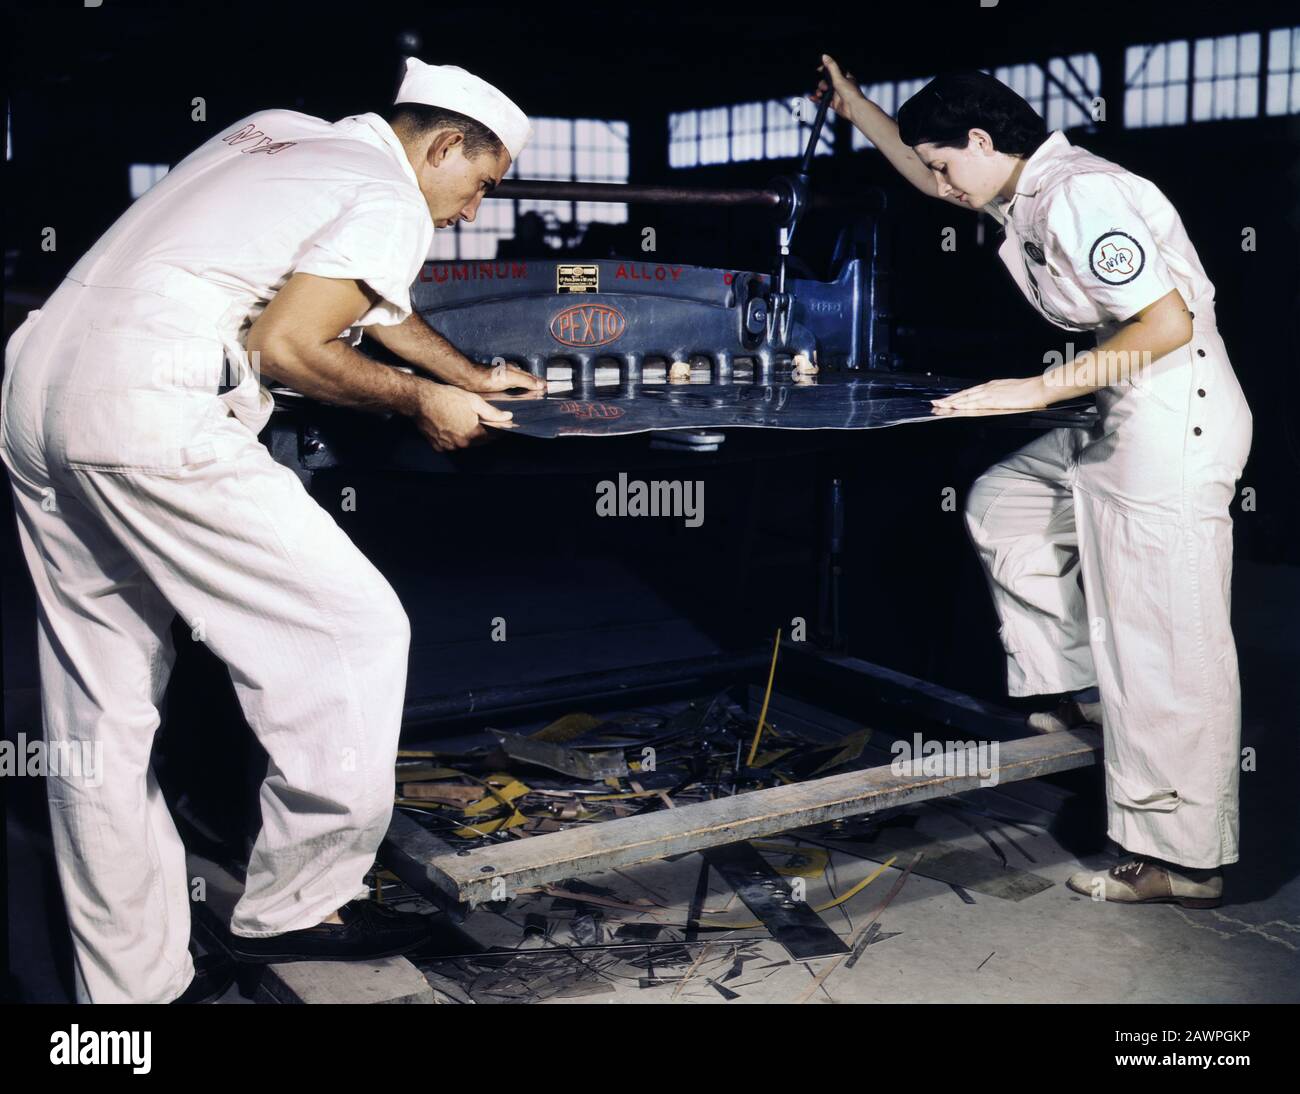 Due Dipendenti NYA ricevono un corso di formazione per imparare a lavorare una macchina Da Taglio, base aerea navale, Corpus Christi, Texas, USA, fotografia di Howard R. Hollem, U.S. Office of War Information, agosto 1942 Foto Stock